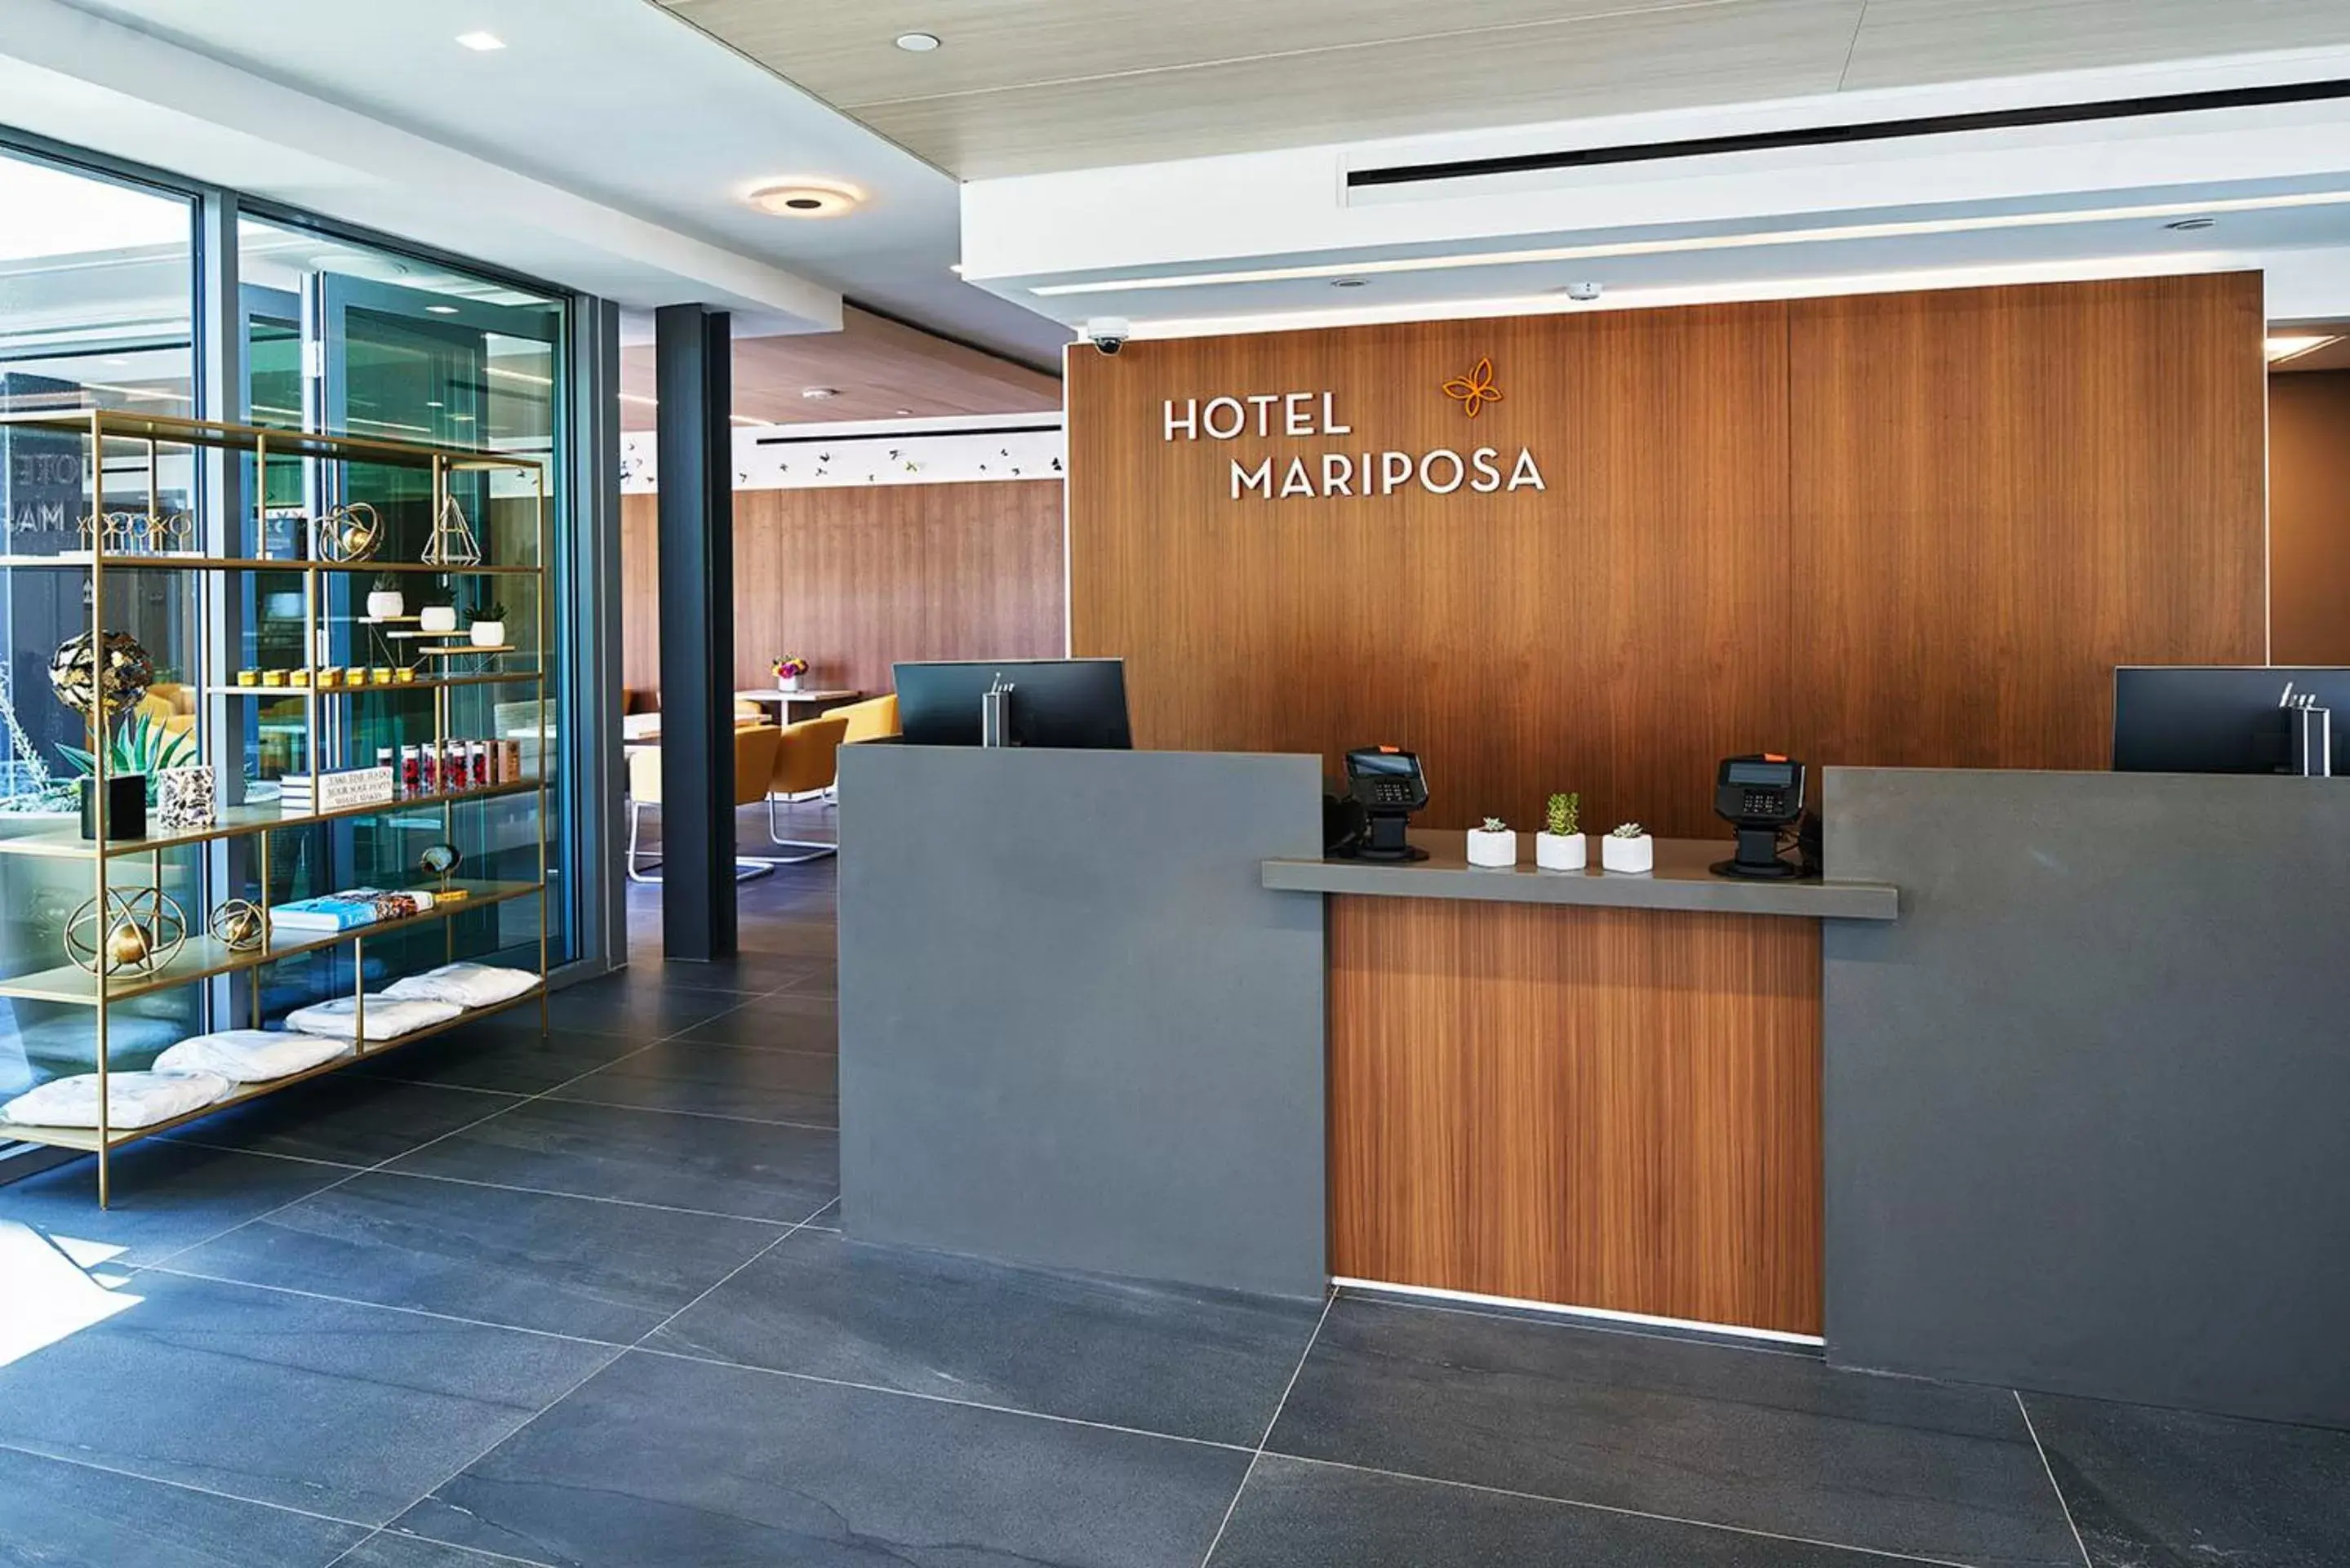 Lobby or reception, Lobby/Reception in Hotel Mariposa